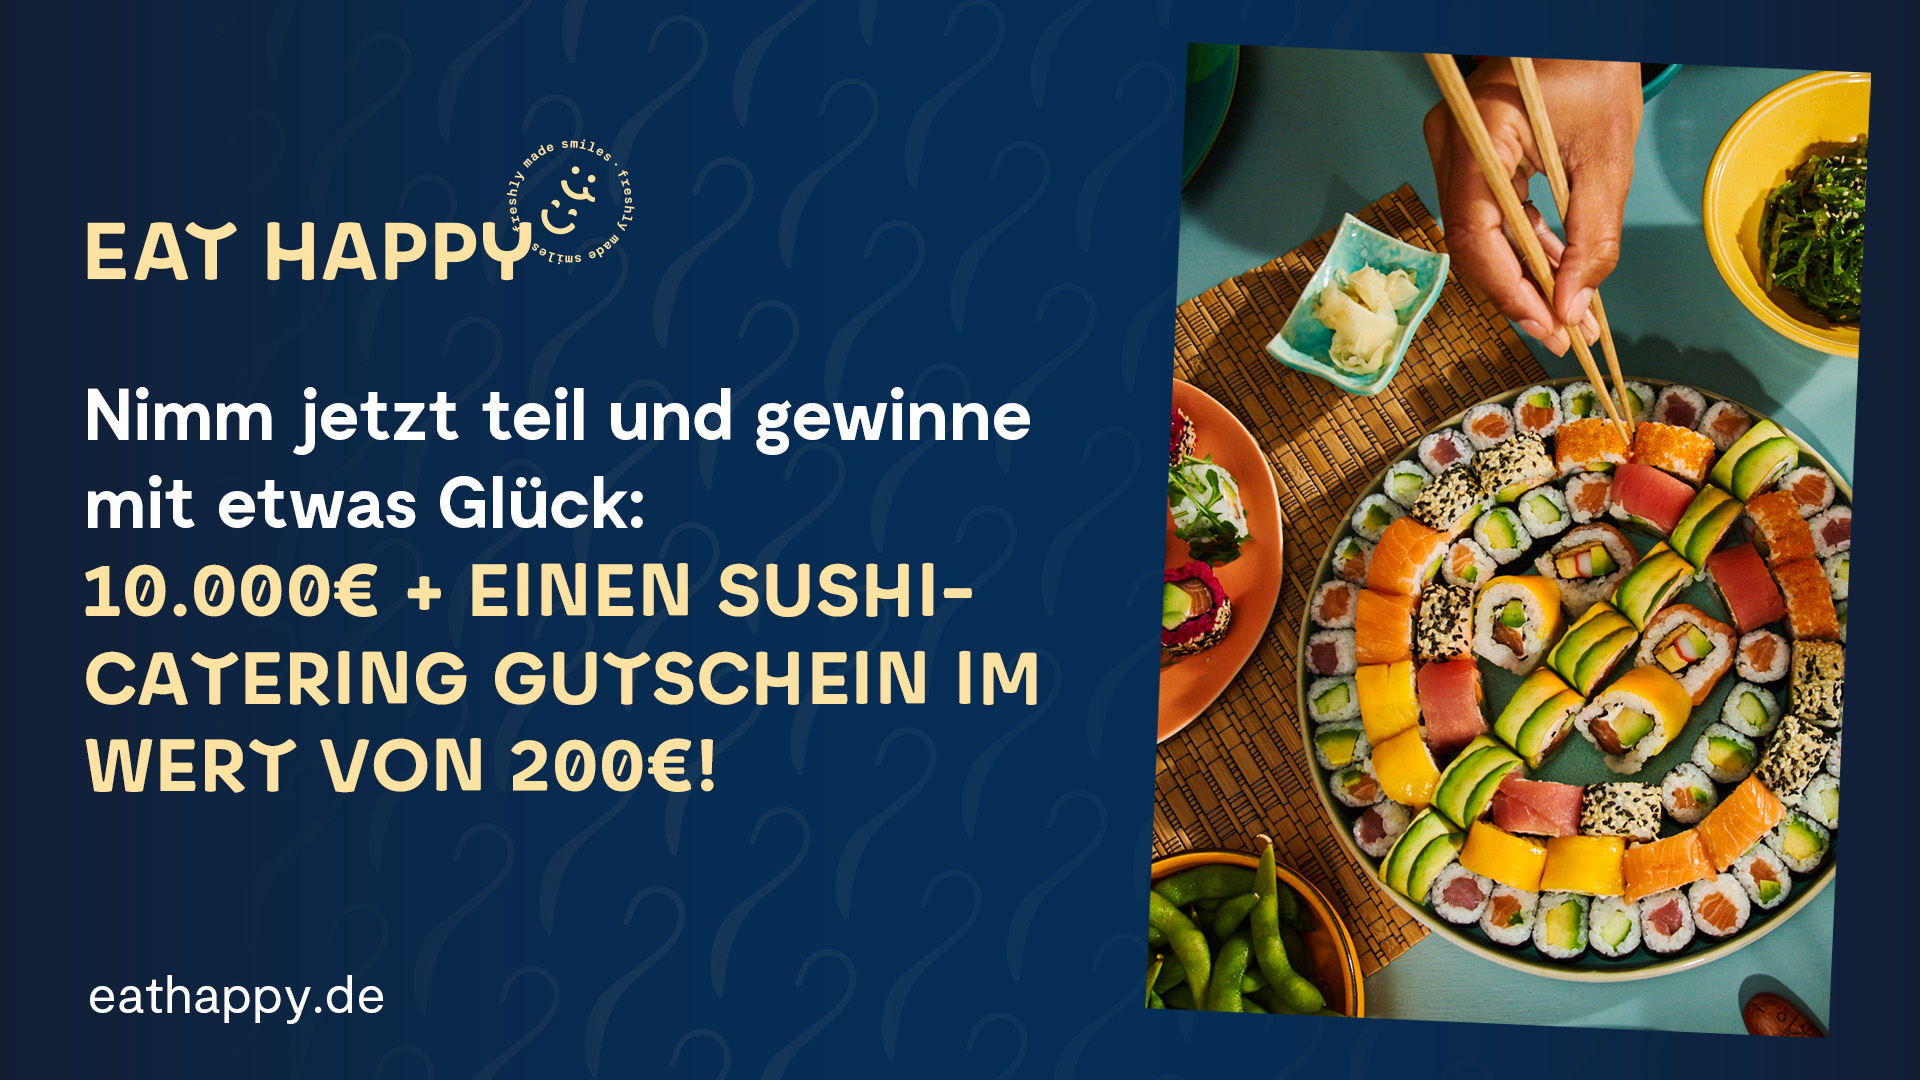 Eat Happy The Taste Gutschein Catering RZ 1080p